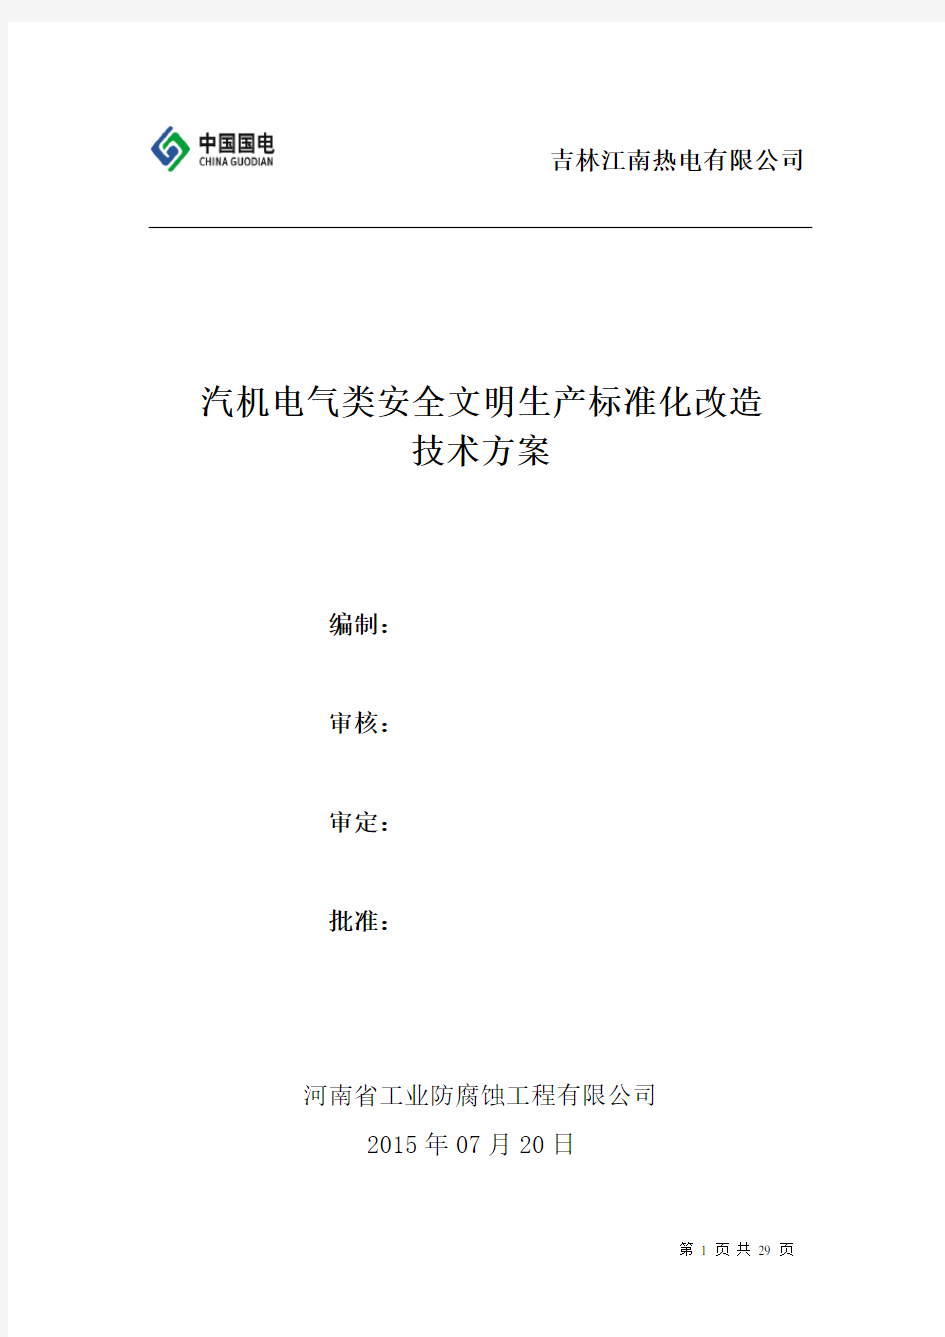 江南电厂汽机电气安全文明标准化改造技术方案(终结版)